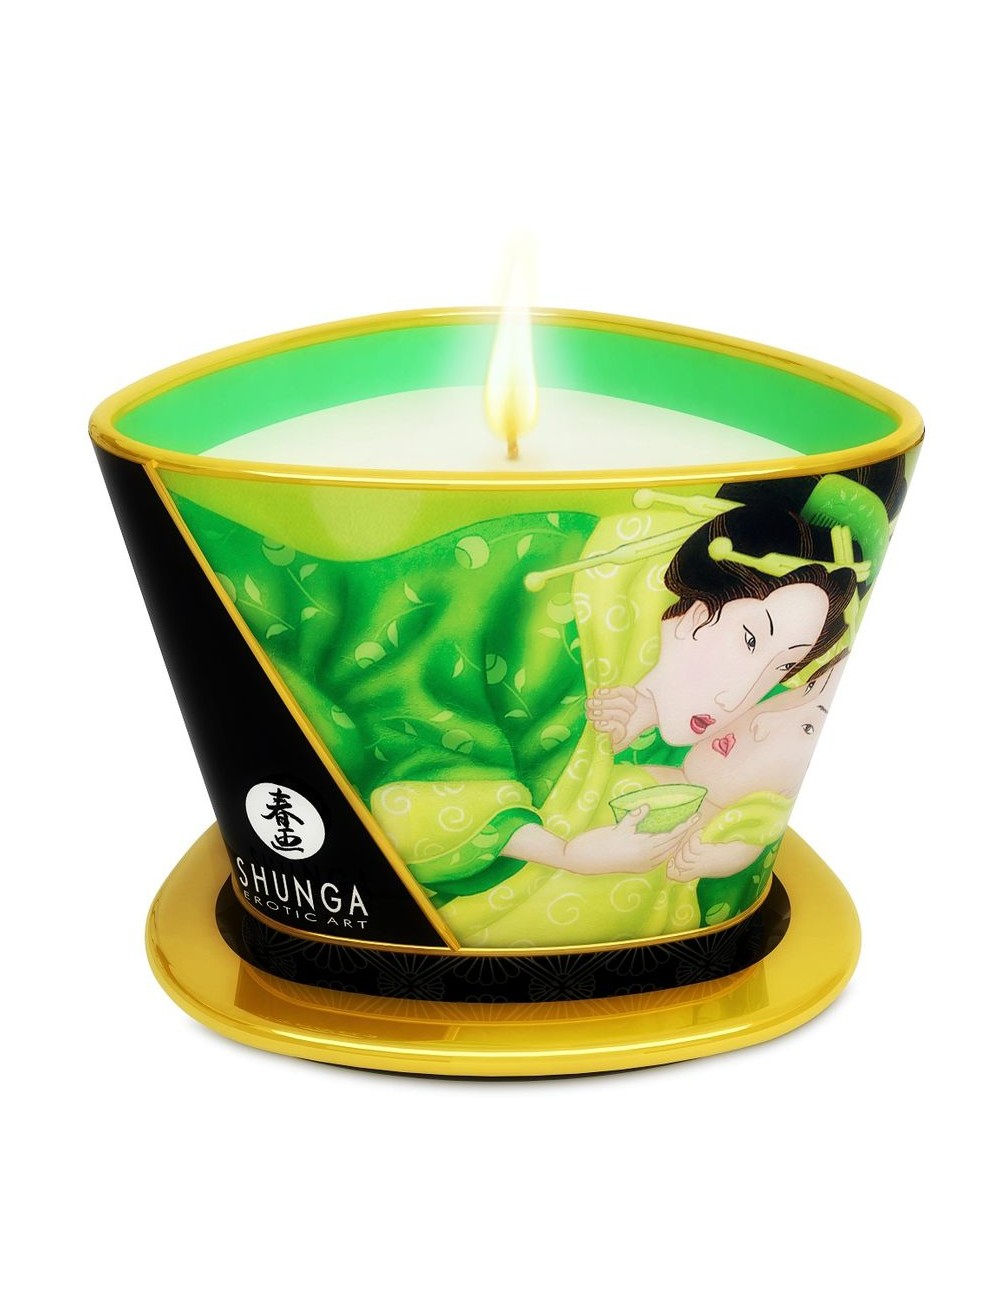 Shunga 6oz Massage Candles